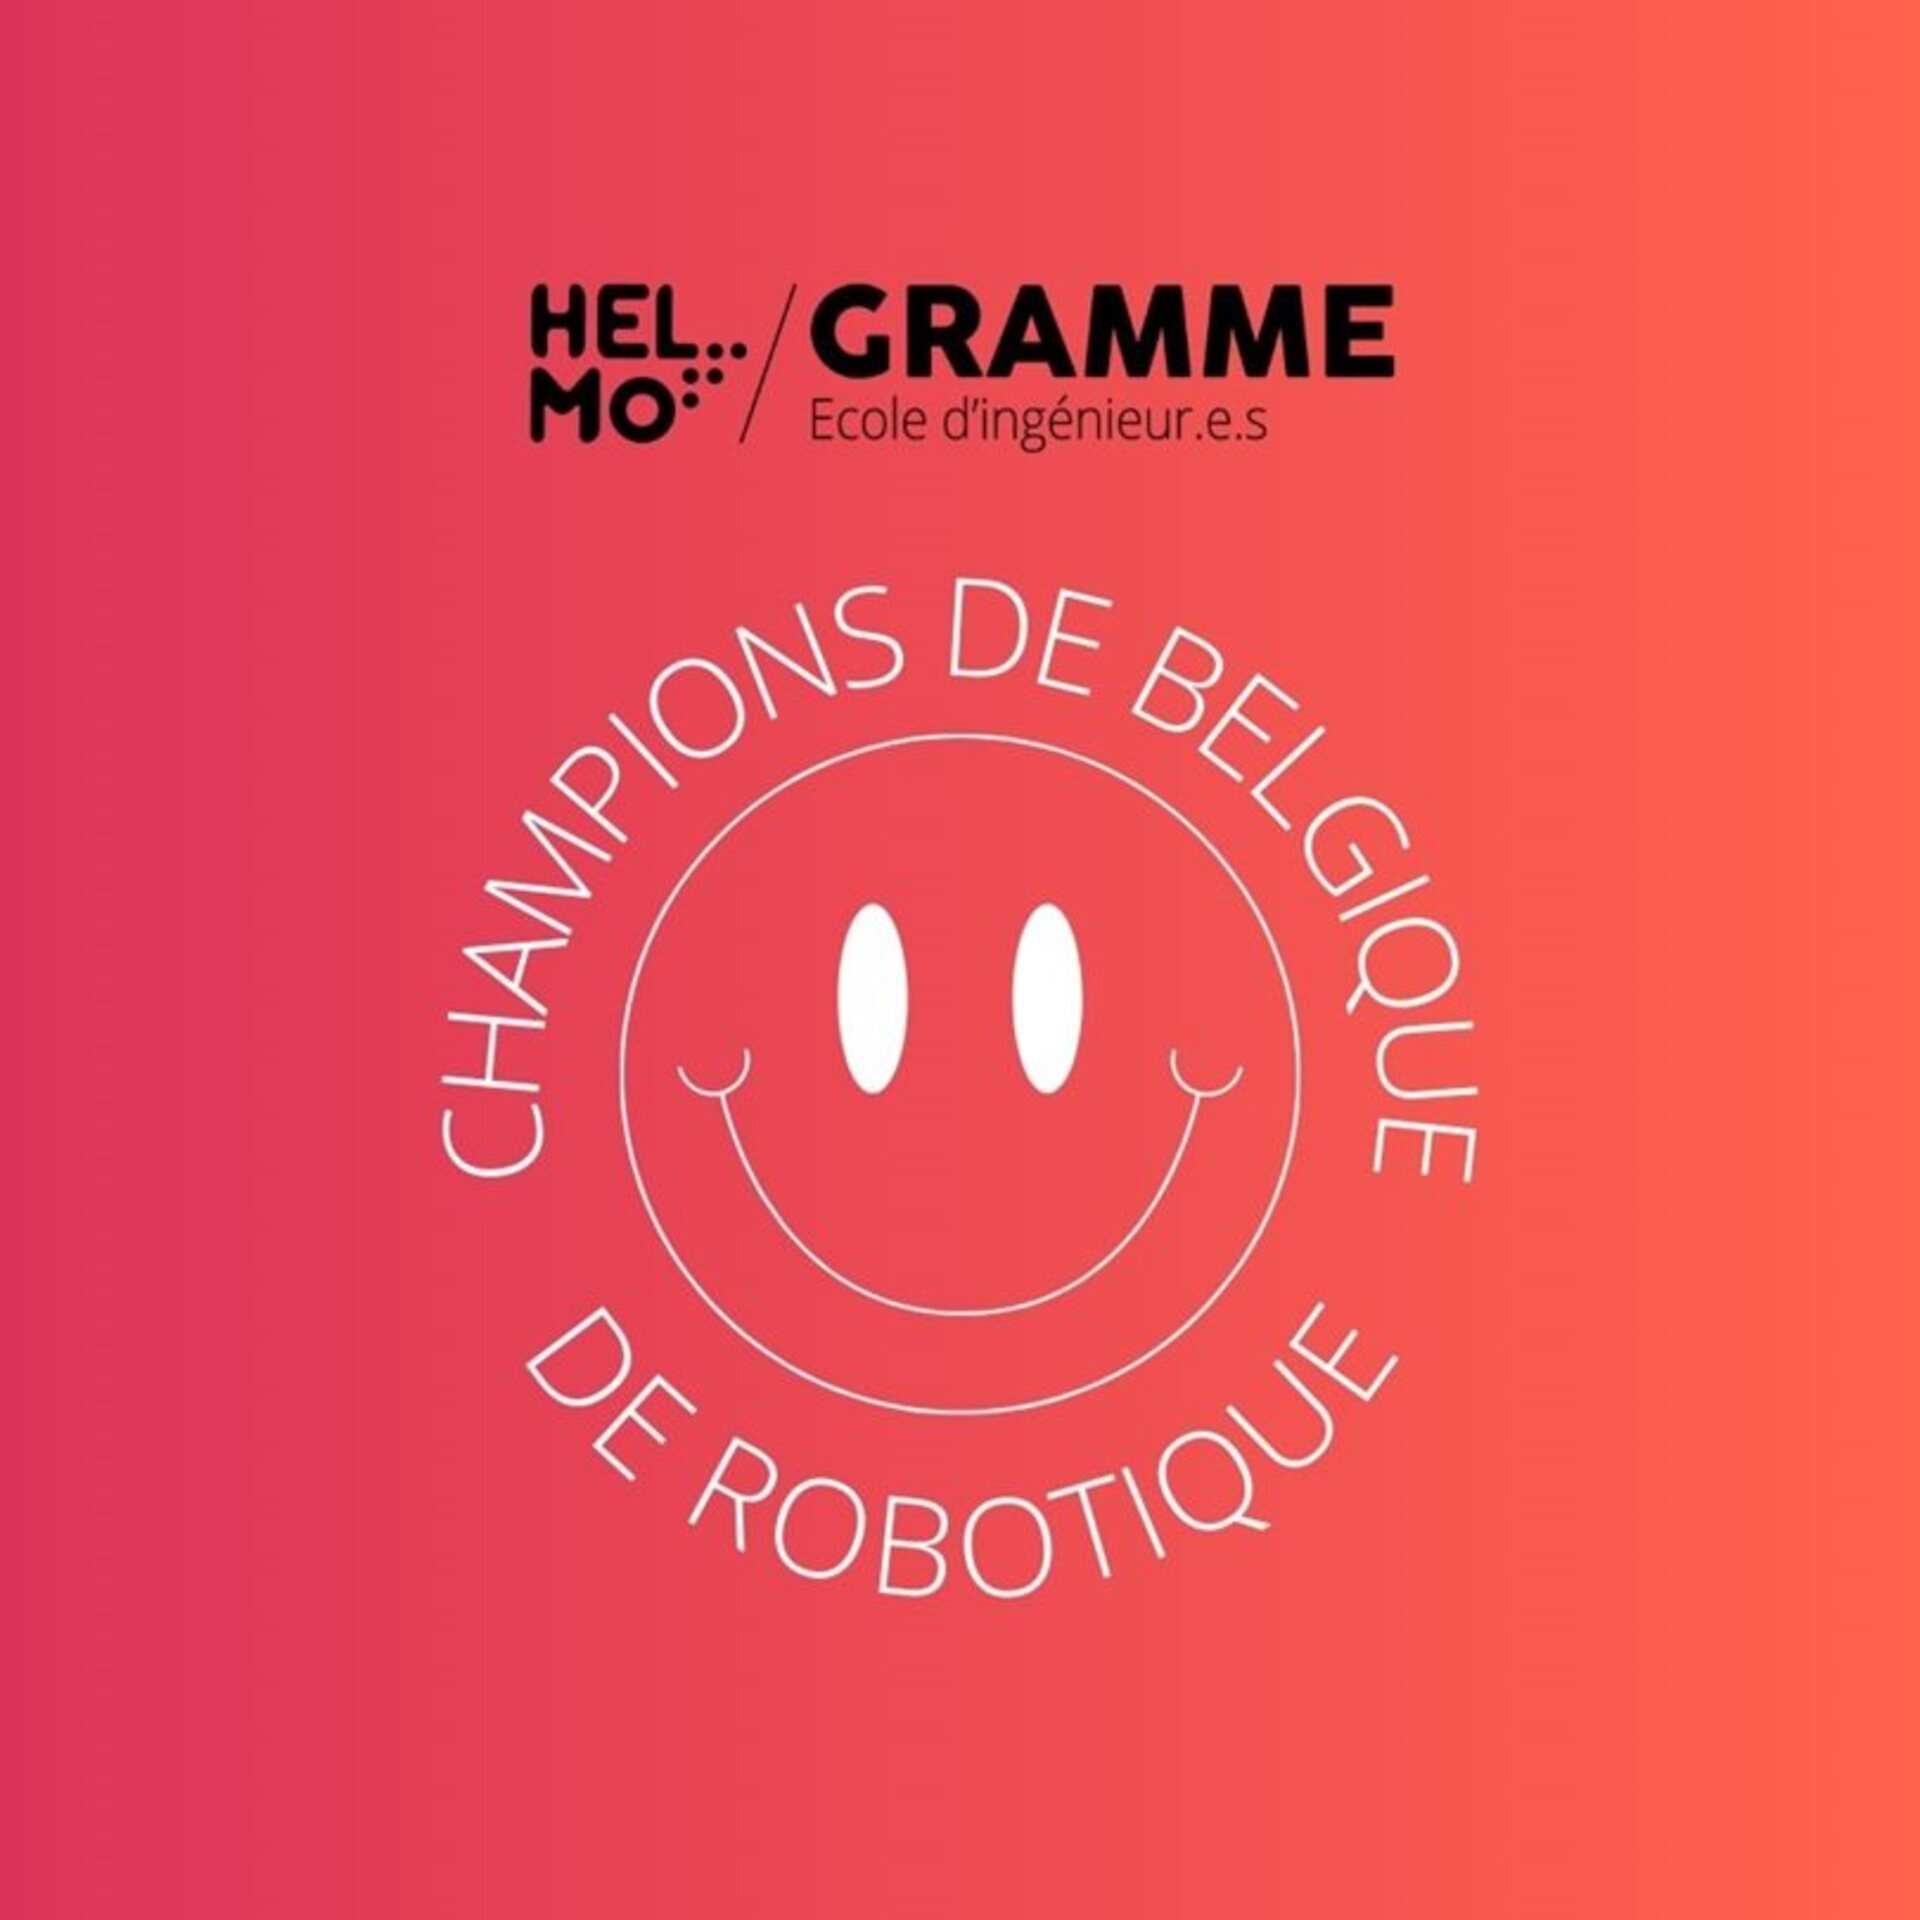 HELMO GRAMME CHAMPIONNE DE BELGIQUE DE ROBOTIQUE 1